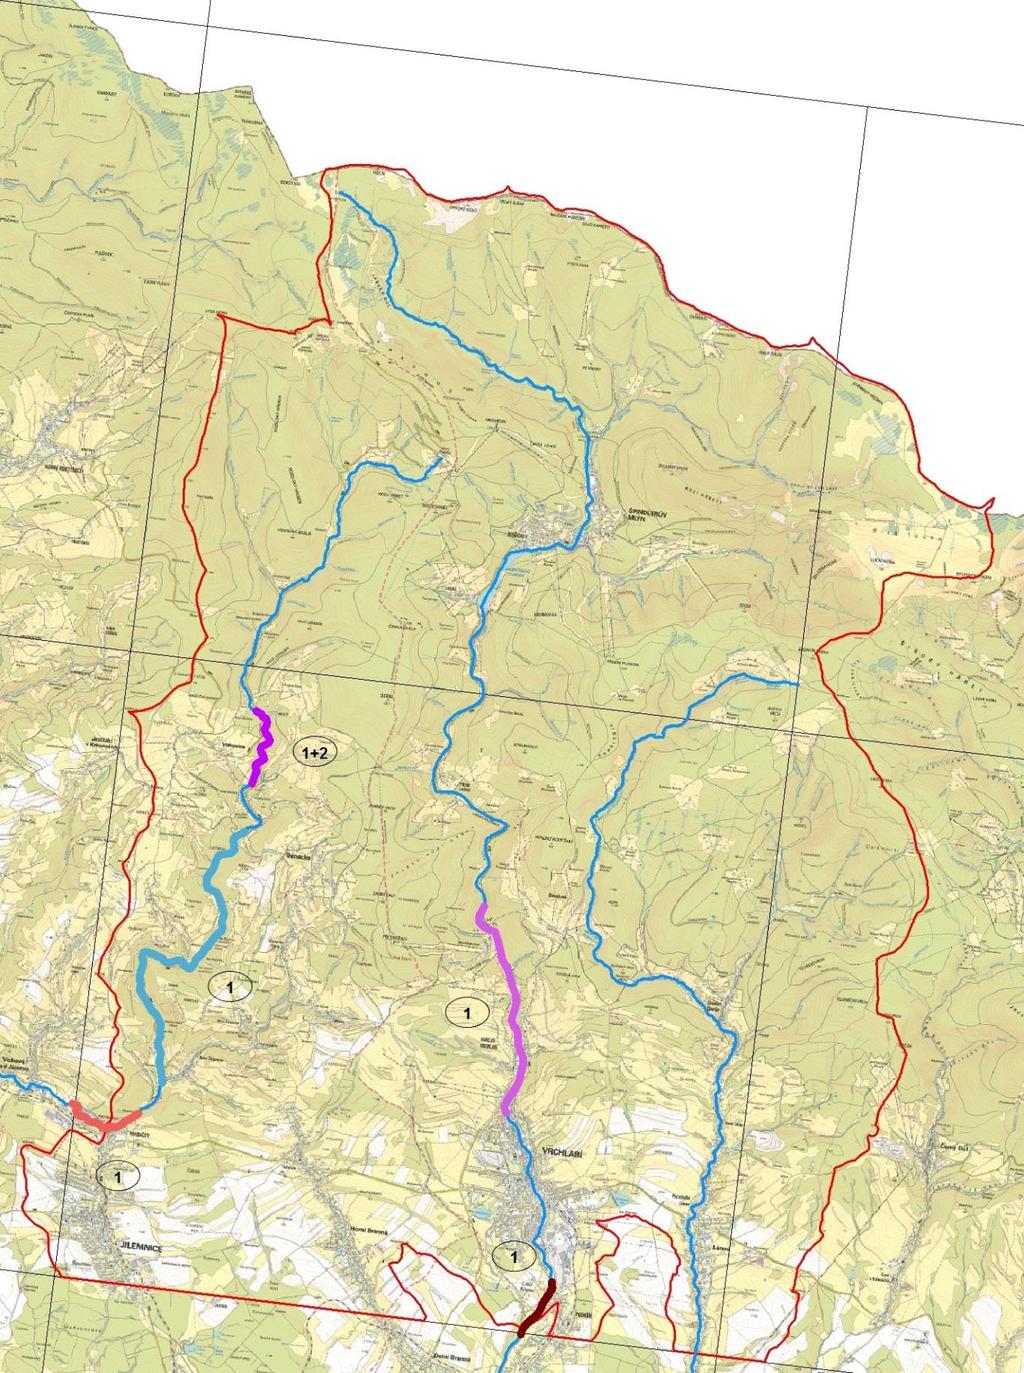 Obr. 9 Výsledky stopování v oblasti Krkonoš ze dne 7. 1. 2017. Vyznačené kvadráty (5259 a 5359) mají velikost 11,2 12 km. Červeně - stopovaná plocha.